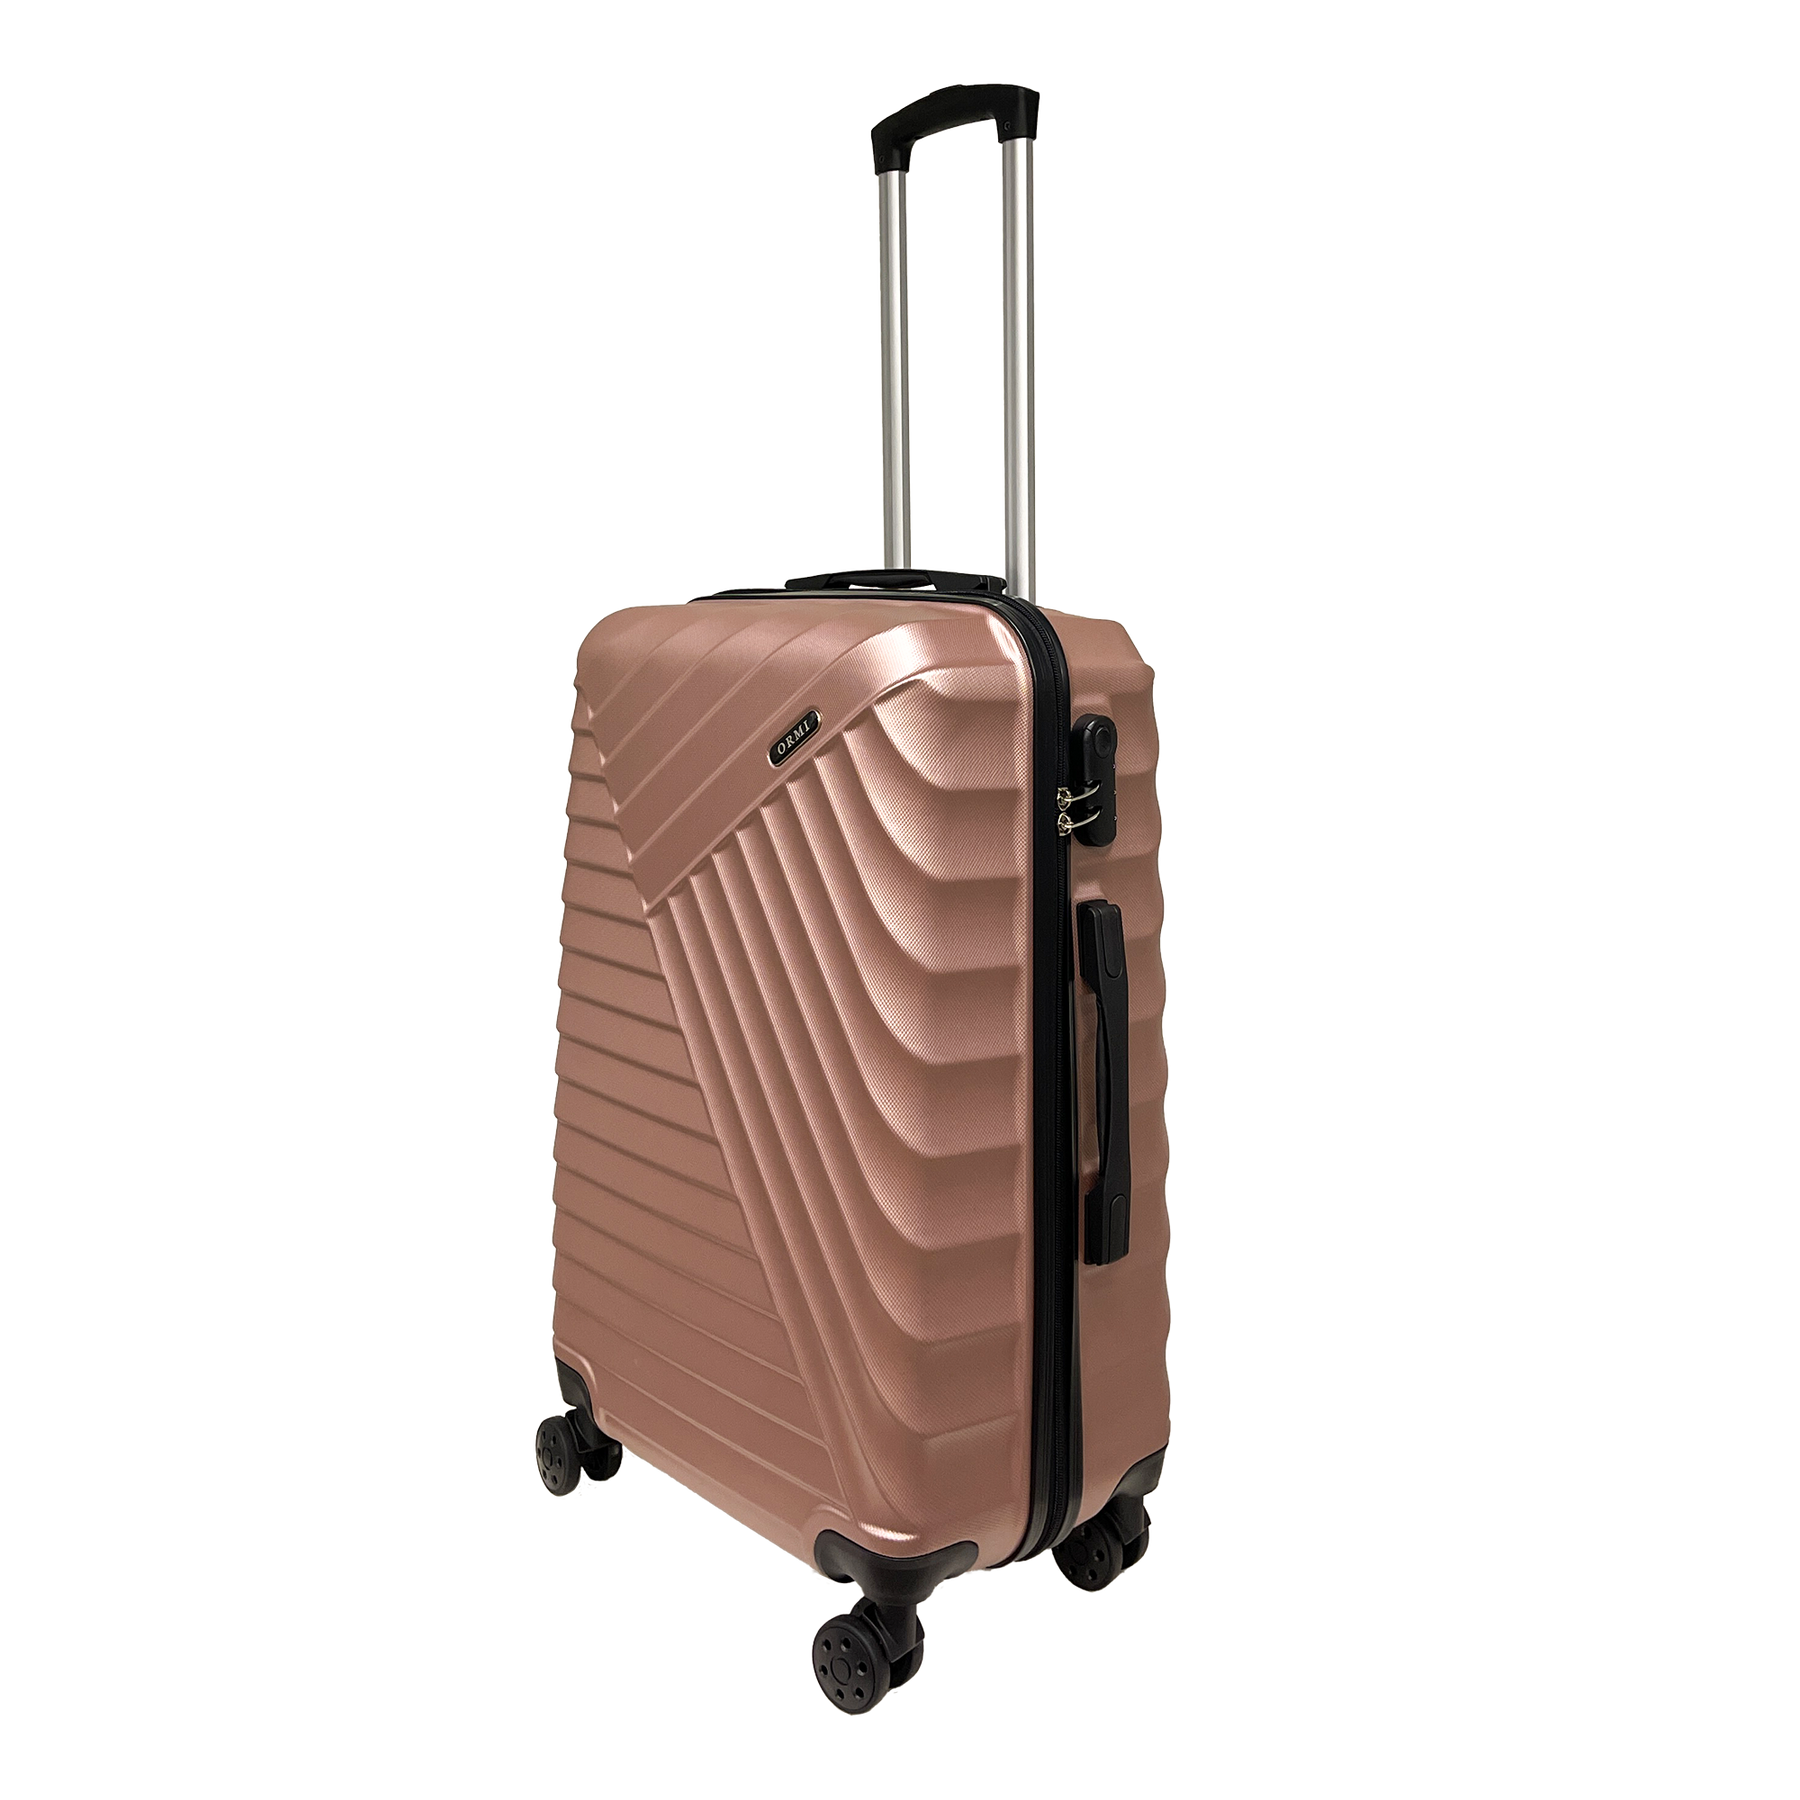 Mellemstor kuffert fra STSHLine i robust ABS, mål 65x43x26 cm, med 4 dobbelte 360° hjul - Let og holdbar